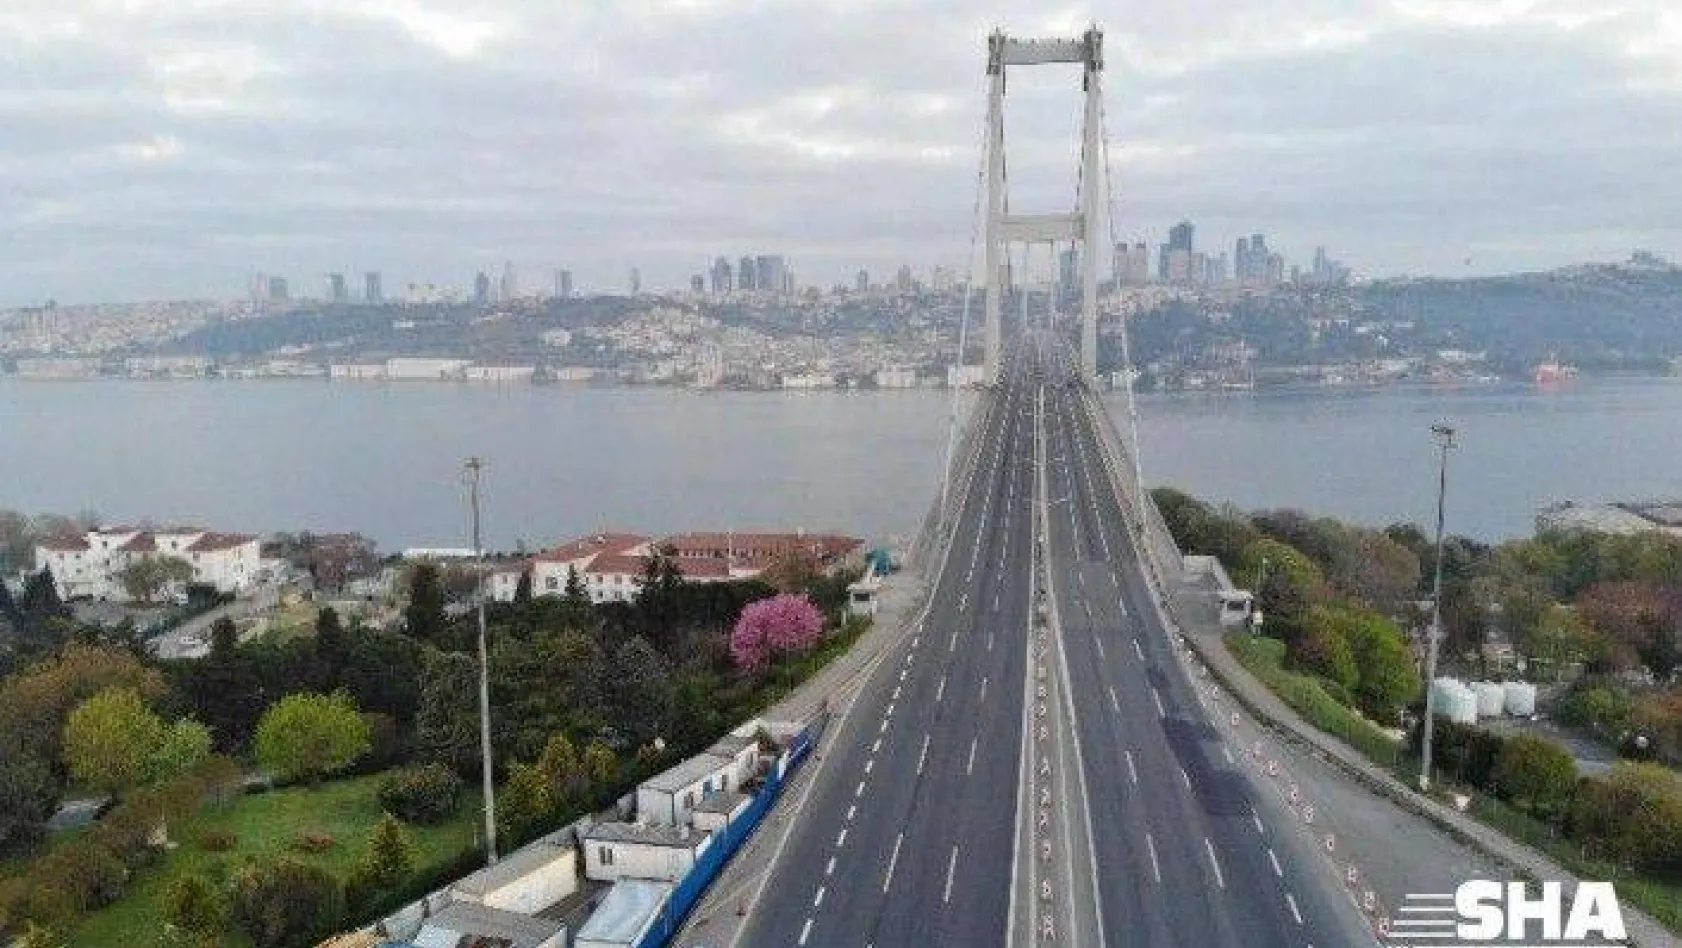 15 Temmuz Şehitler Köprüsü, sokağa çıkma kısıtlamasının üçüncü gününde de boş kaldı